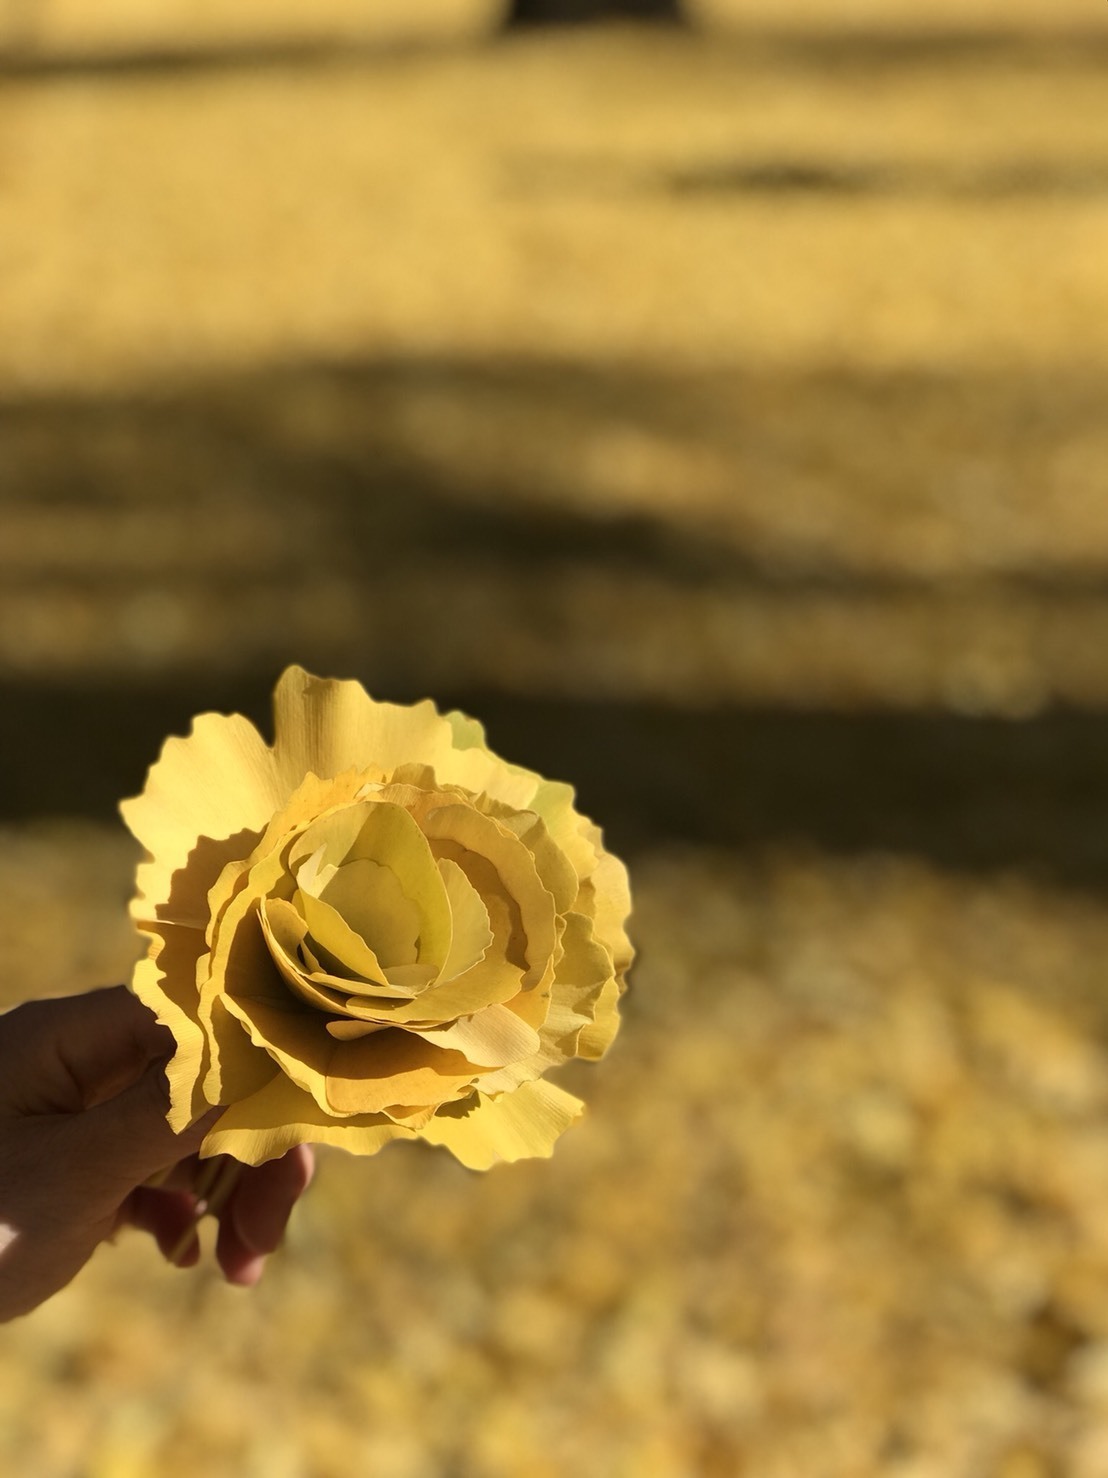 落ち葉からバラの花が咲きました マヌエア山崎 ブログ フラダンス ナヴァイエハー主宰のブログ